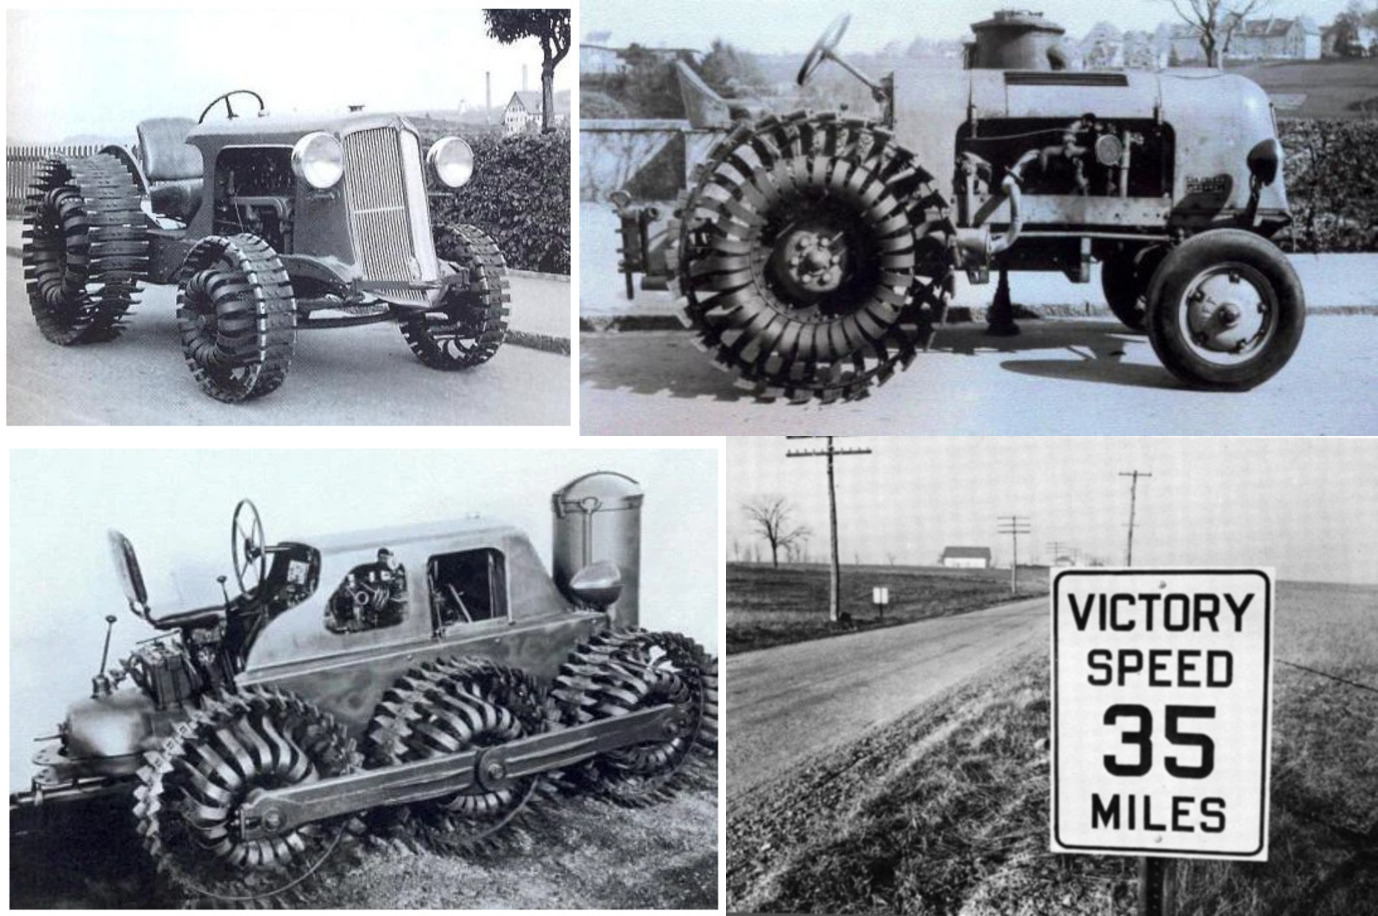  Например, компания Ernst Meili Tractor сделала из старых автомобильных рессор стальные колеса (в то время компания Meili производила только тракторы Doodlebug из всех марок автомобилей). Всего было изготовлено около 600 таких стальных колес.